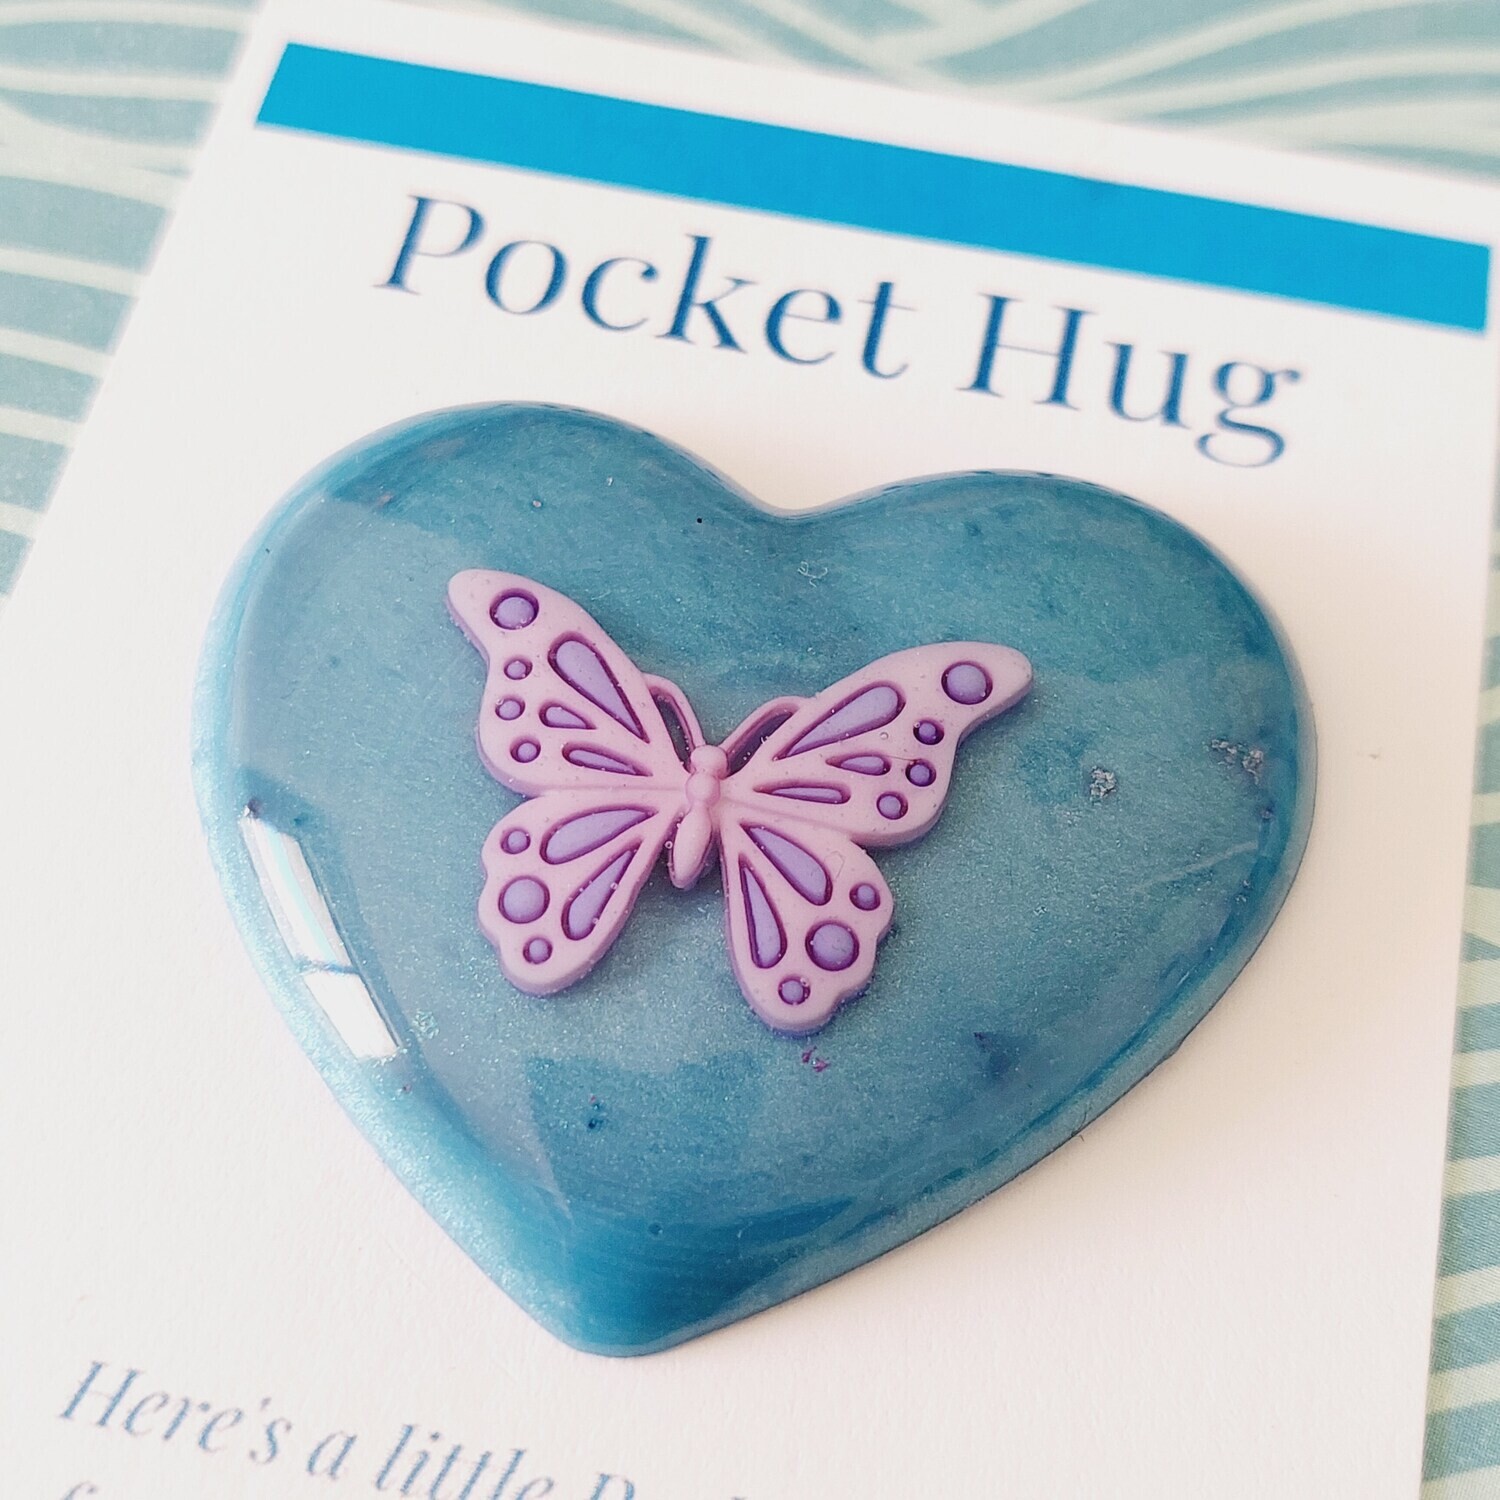 Butterfly Pocket Hug